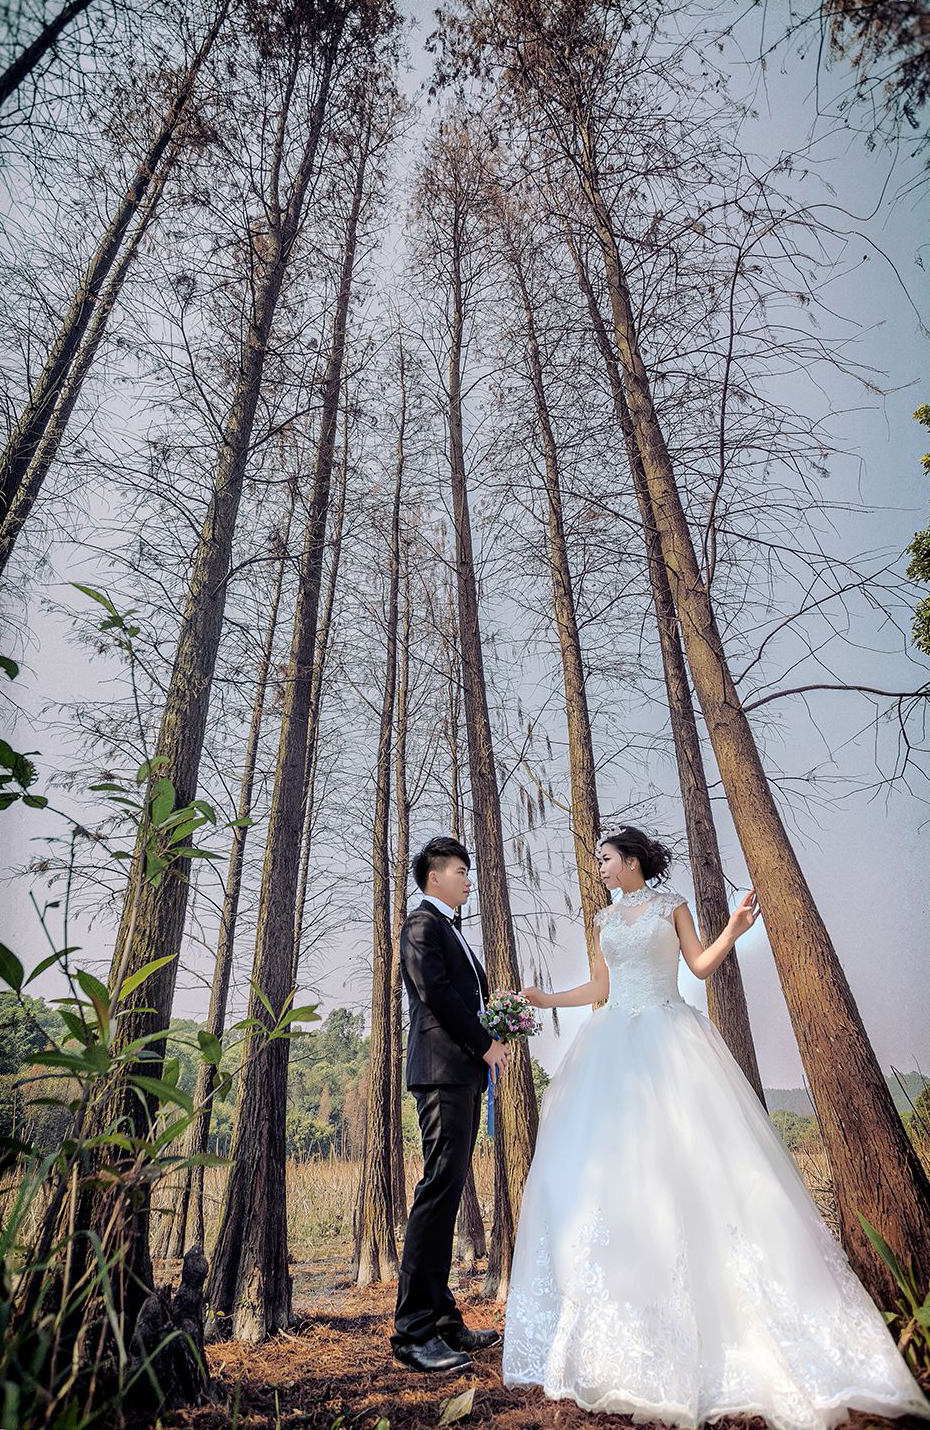 2017年8月广州结婚照,茂名婚纱照,婚纱照图片